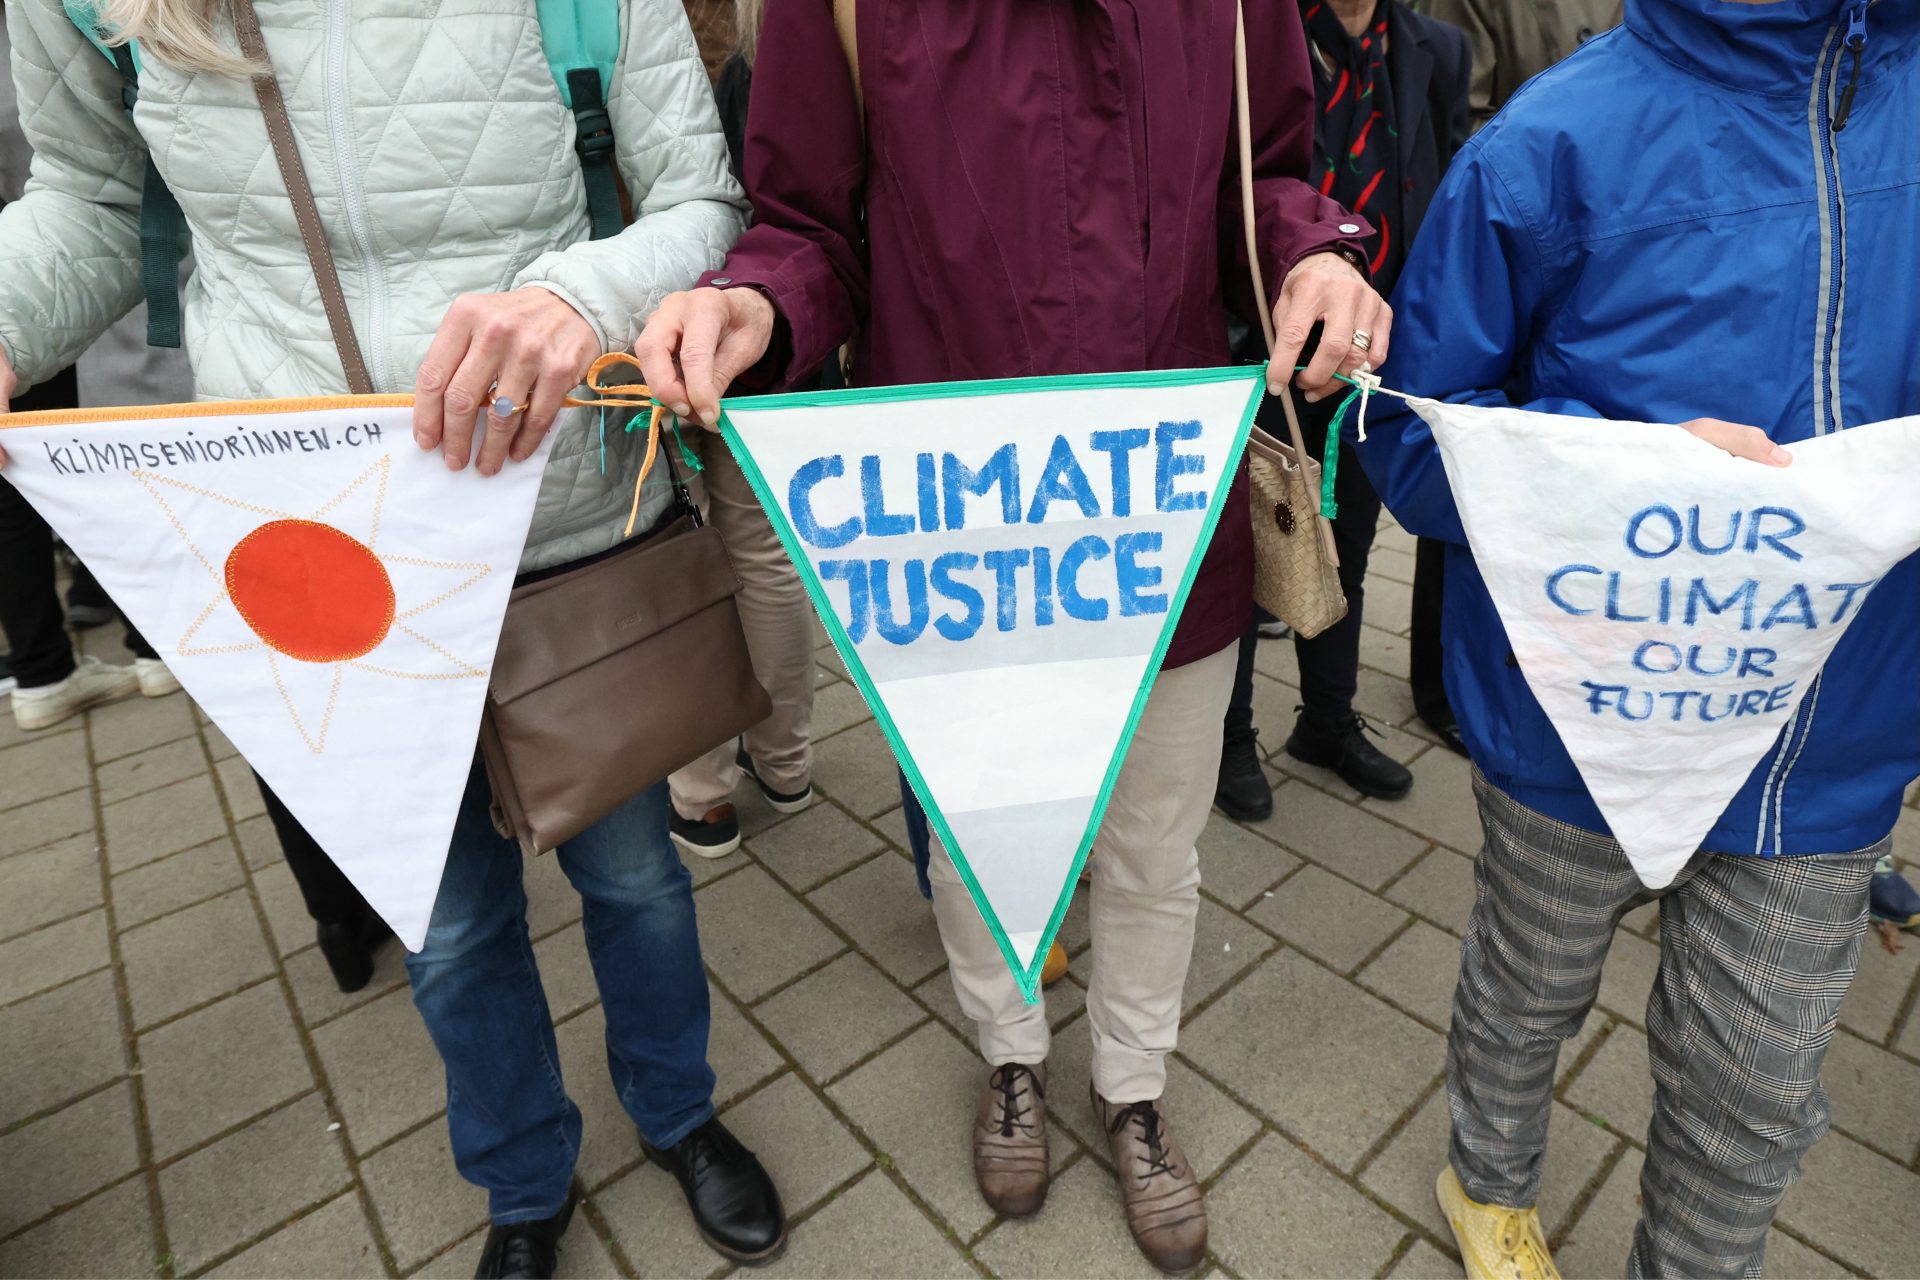 Quatre personnes sur cinq veulent plus d'actions climatiques UN